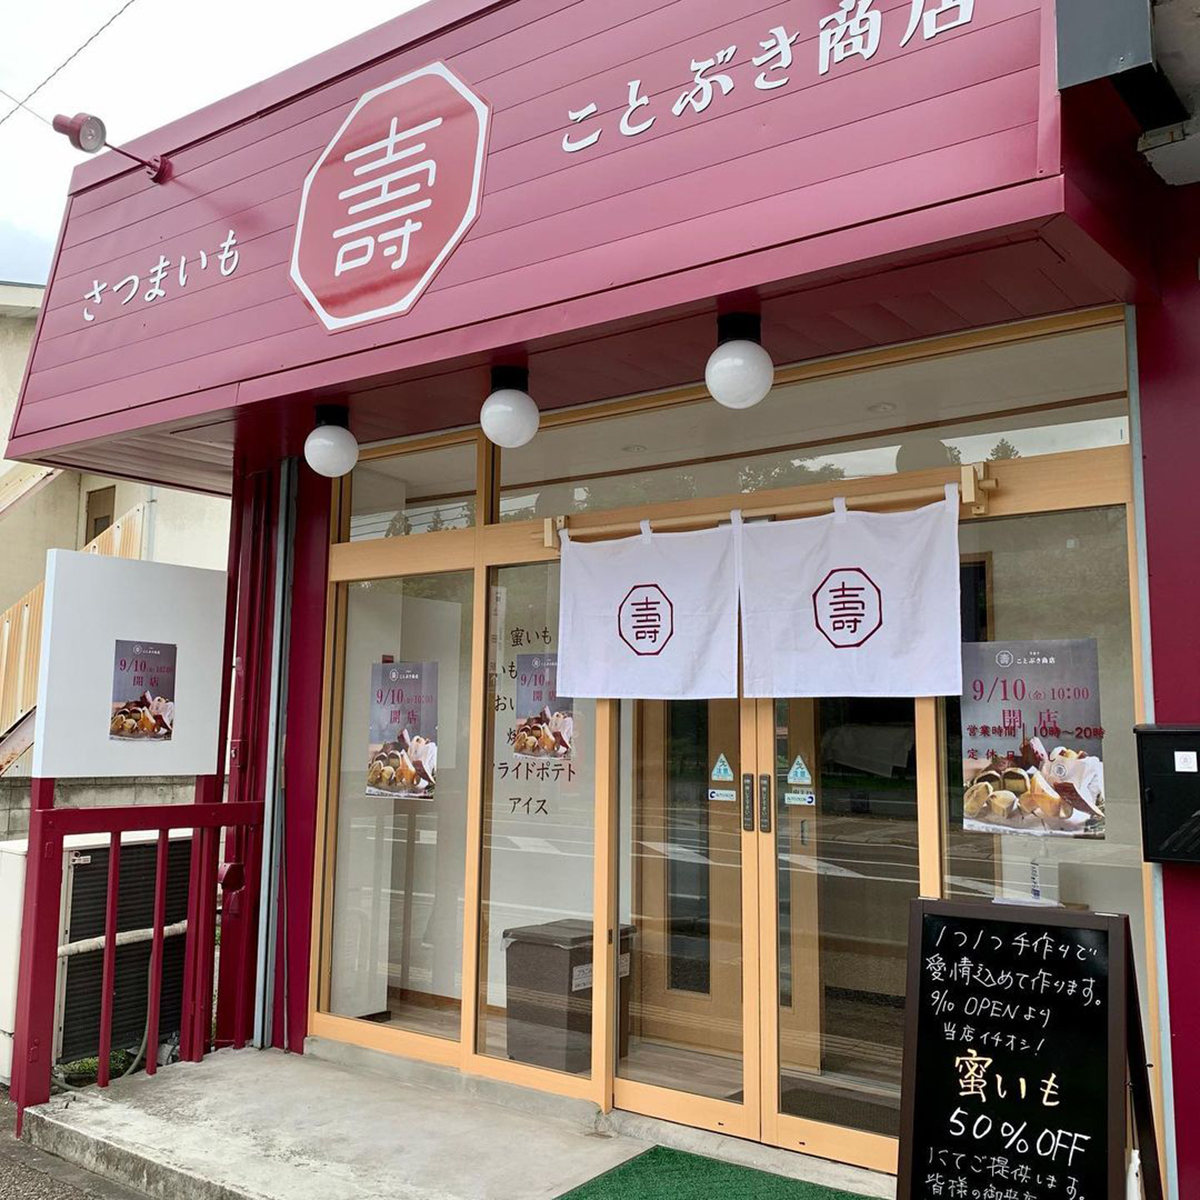 すべて手作りのサツマイモ菓子専門店 ことぶき商店 長野県上田市天神の上田城跡公園すぐに9月10日オープン